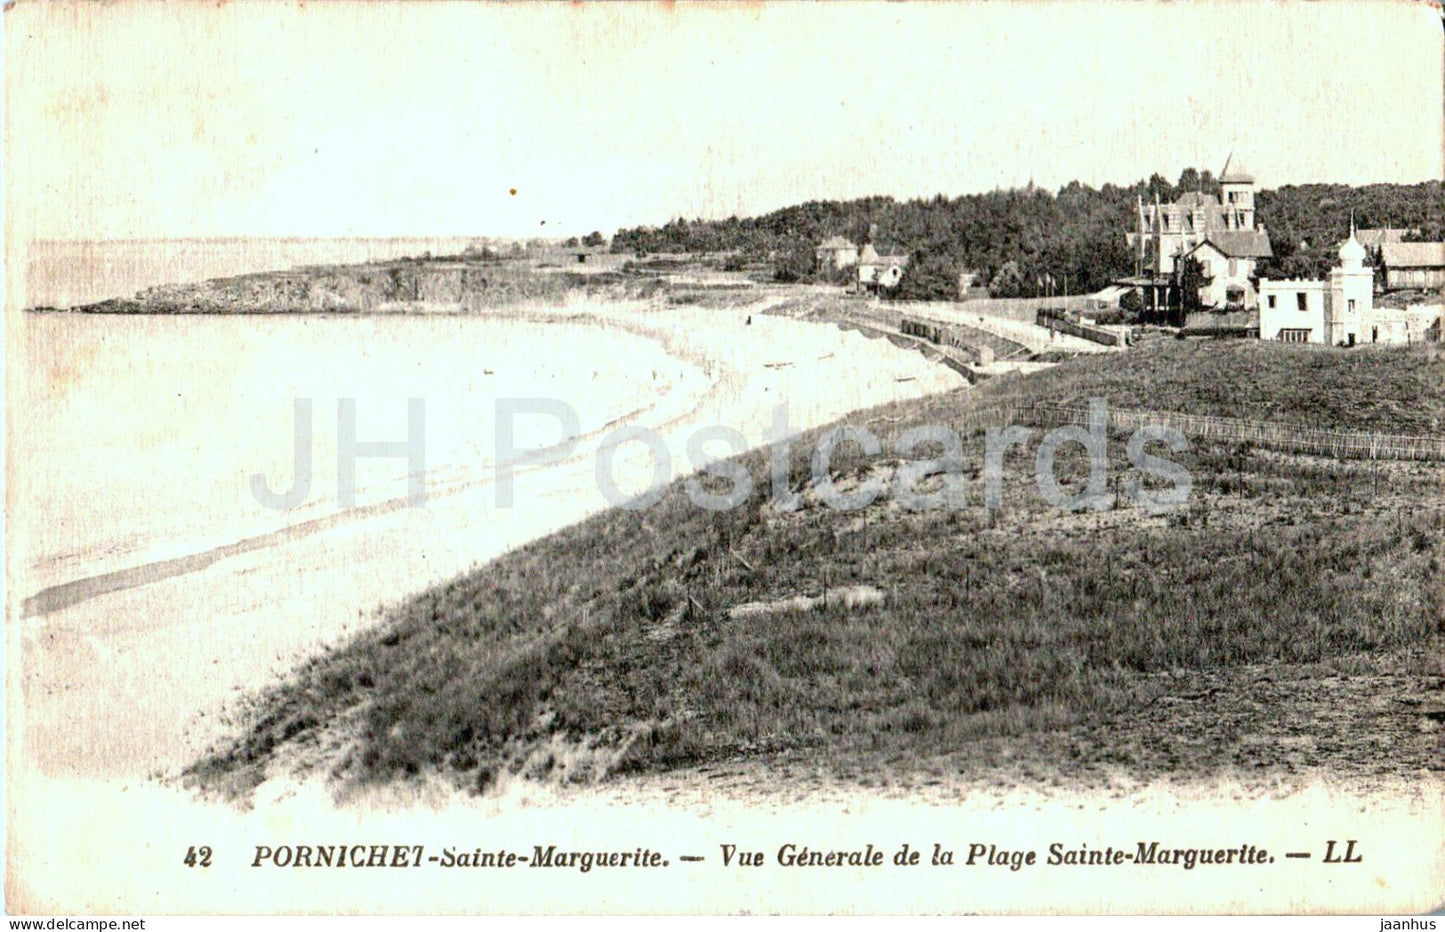 Pornichet - Sainte Marguerite - Vue Generale de la Plage Sainte Marguerite - 42 - old postcard - 1931 - France - used - JH Postcards